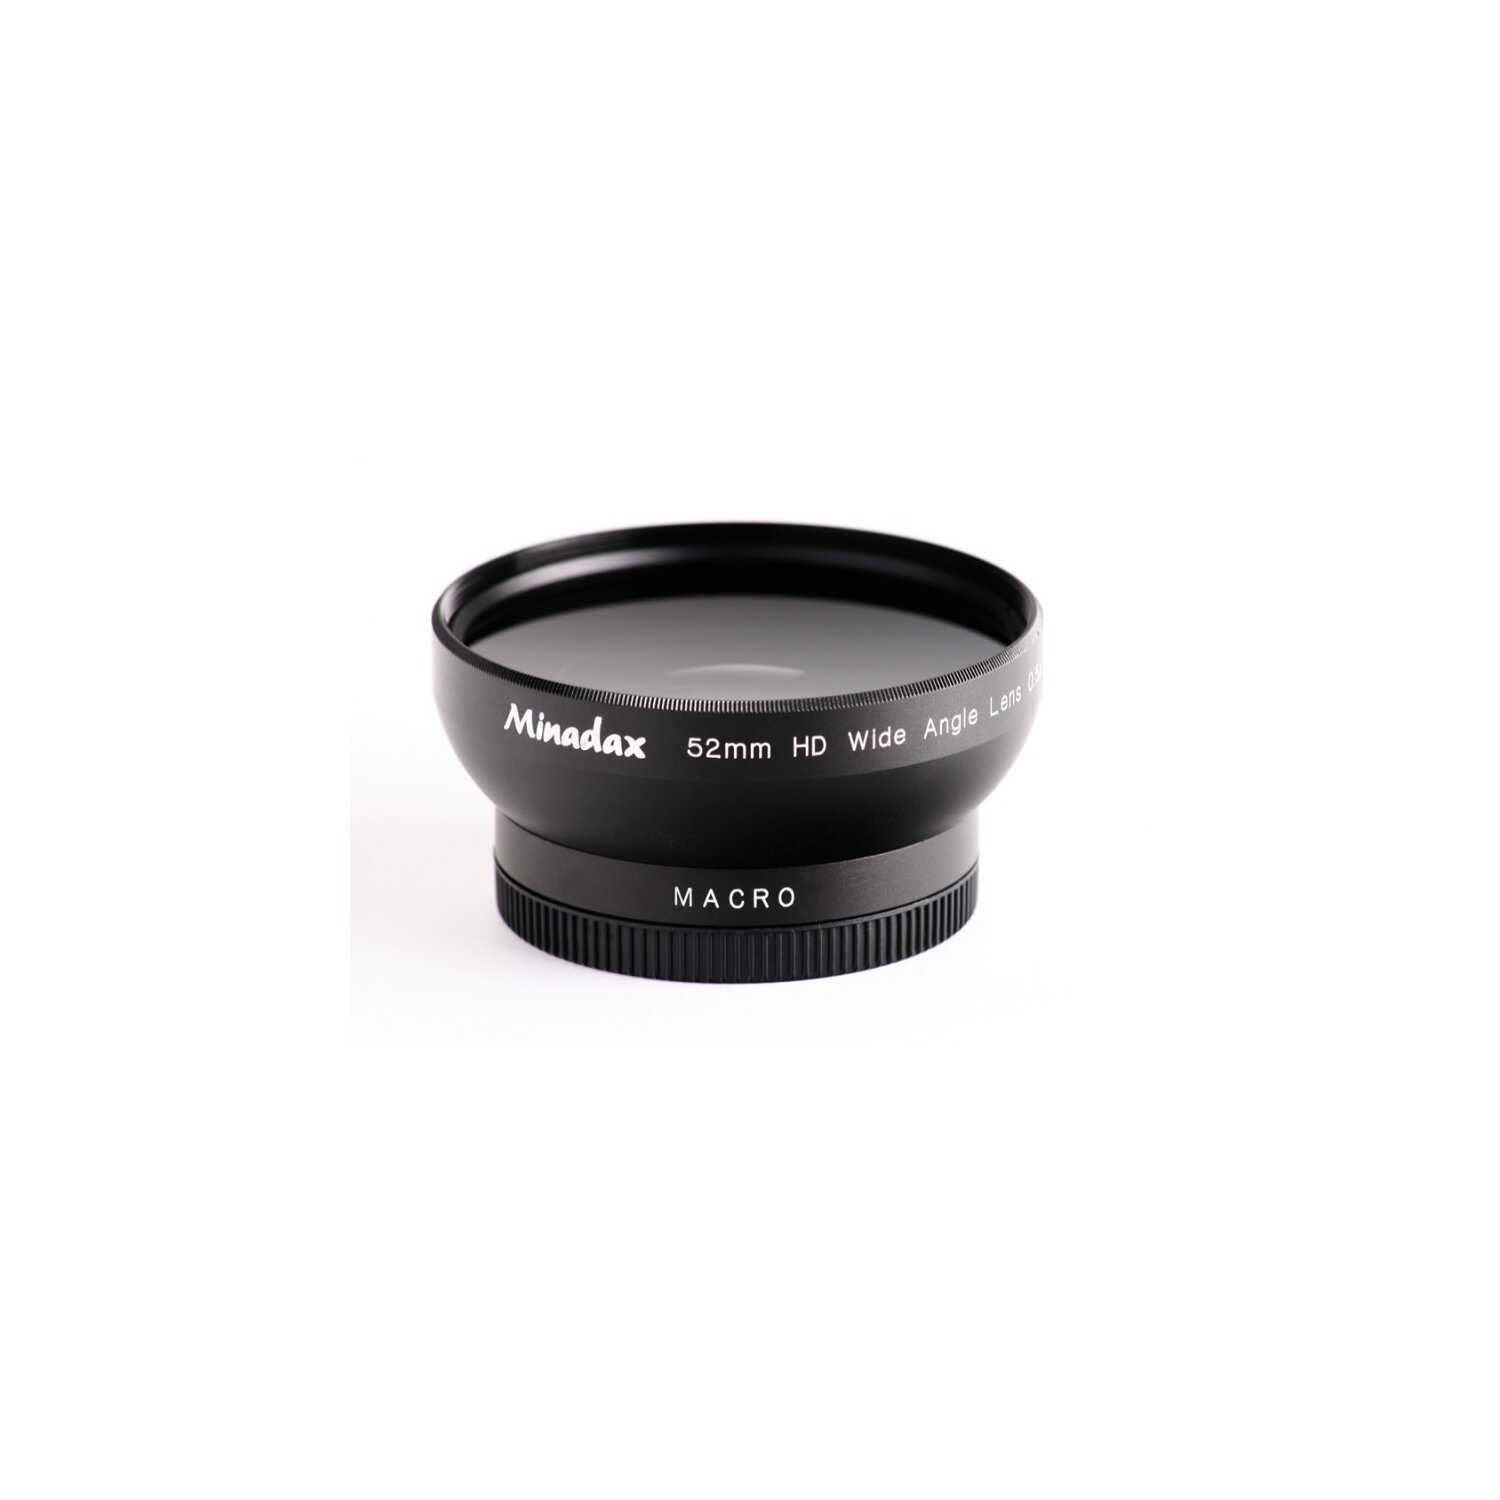 0.5x Minadax Weitwinkel Vorsatz mit Makrolinse kompatibel mit Panasonic Lumix DMC-LX3, Leica D-LUX 4 - in schwarz